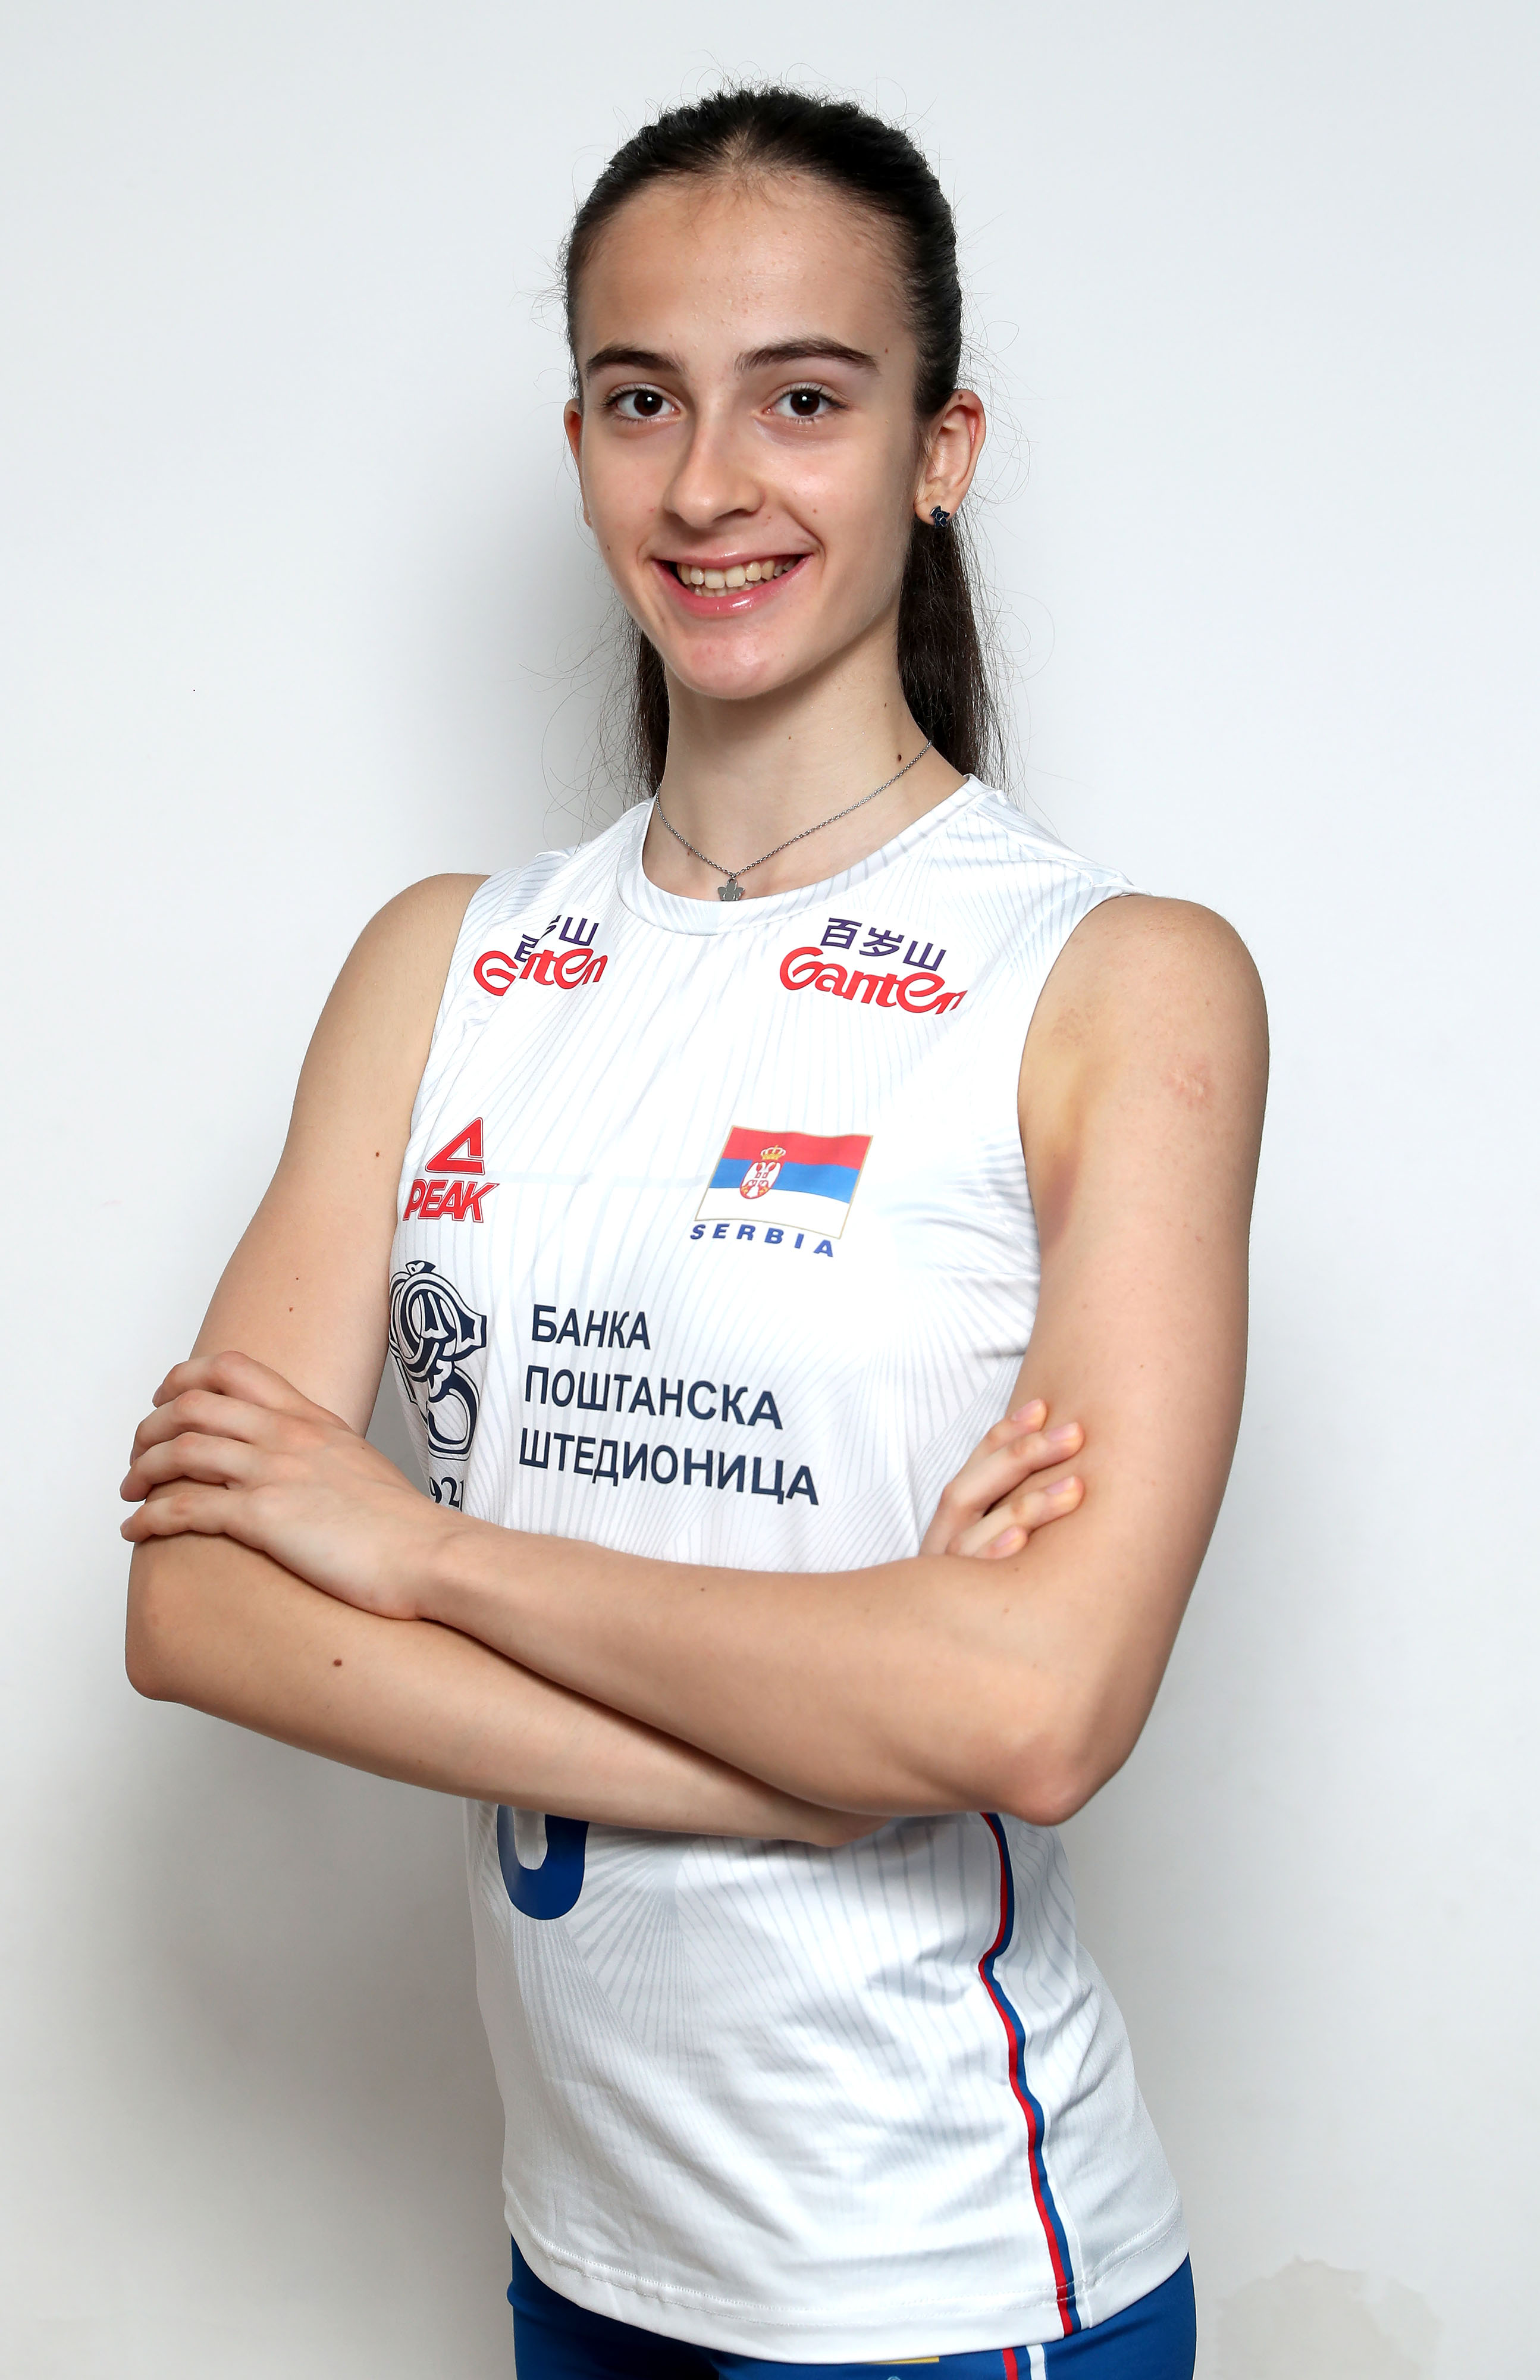 Bojana Ristanović